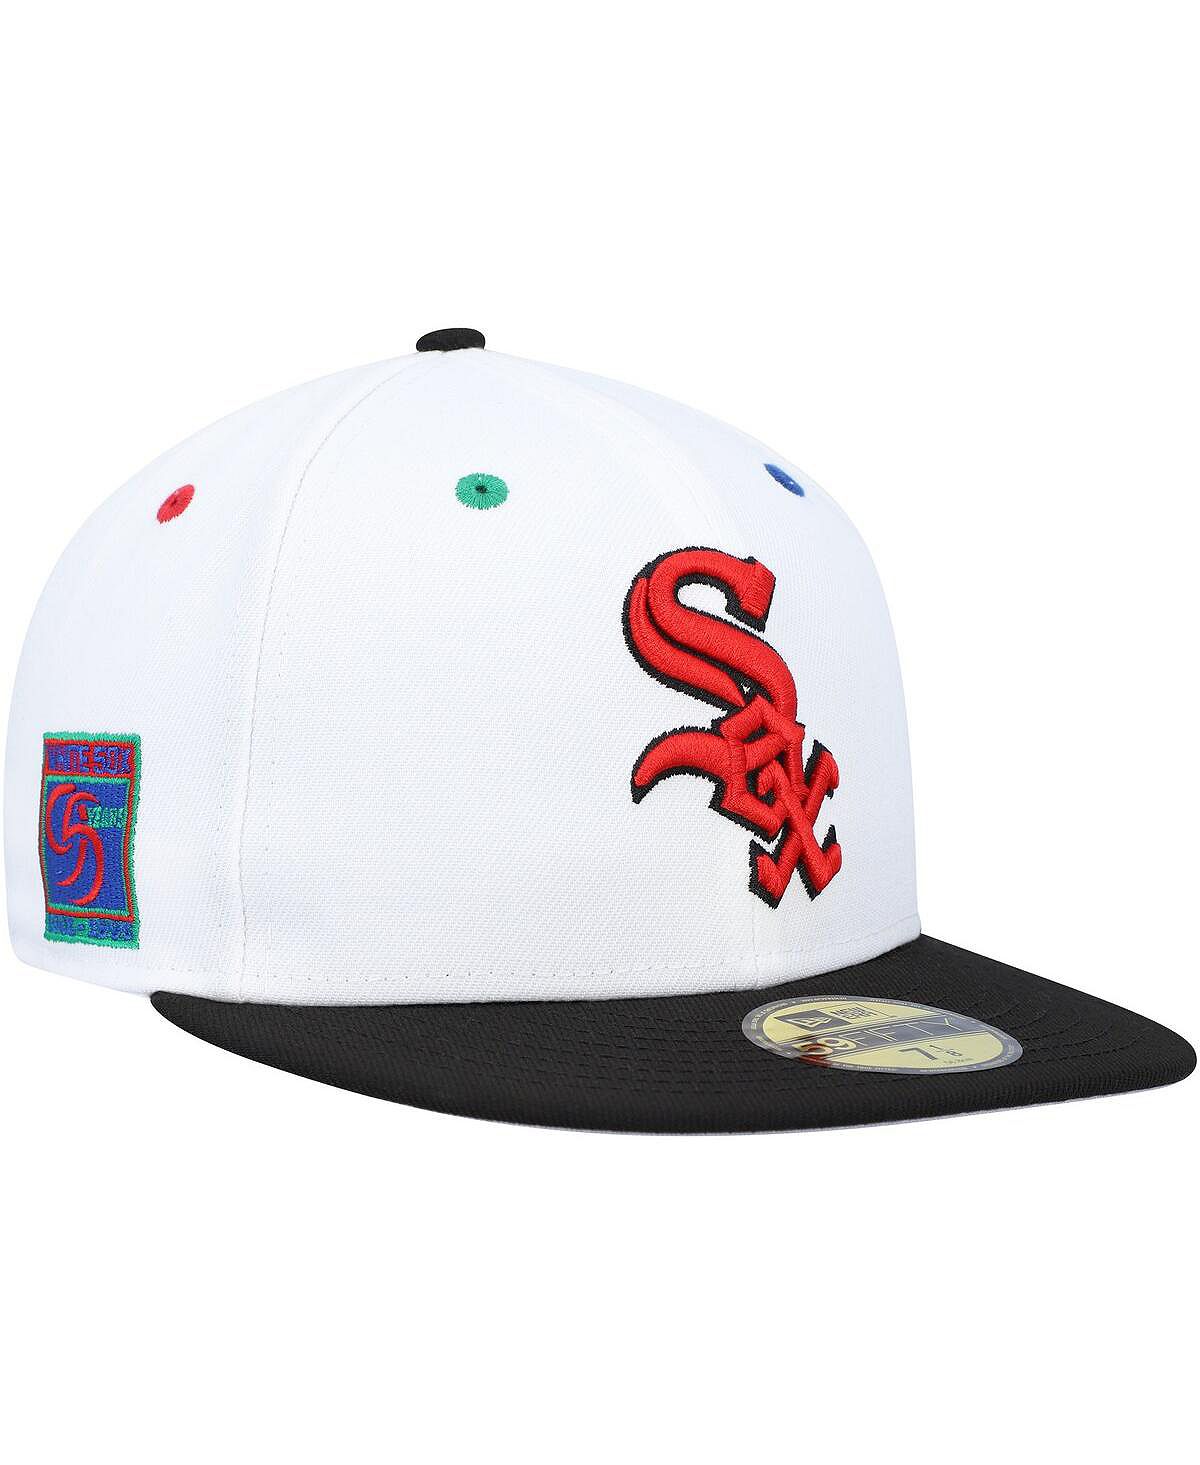 Мужская белая, черная приталенная шляпа Chicago White Sox 95th Anniversary Primary Eye 59FIFTY New Era